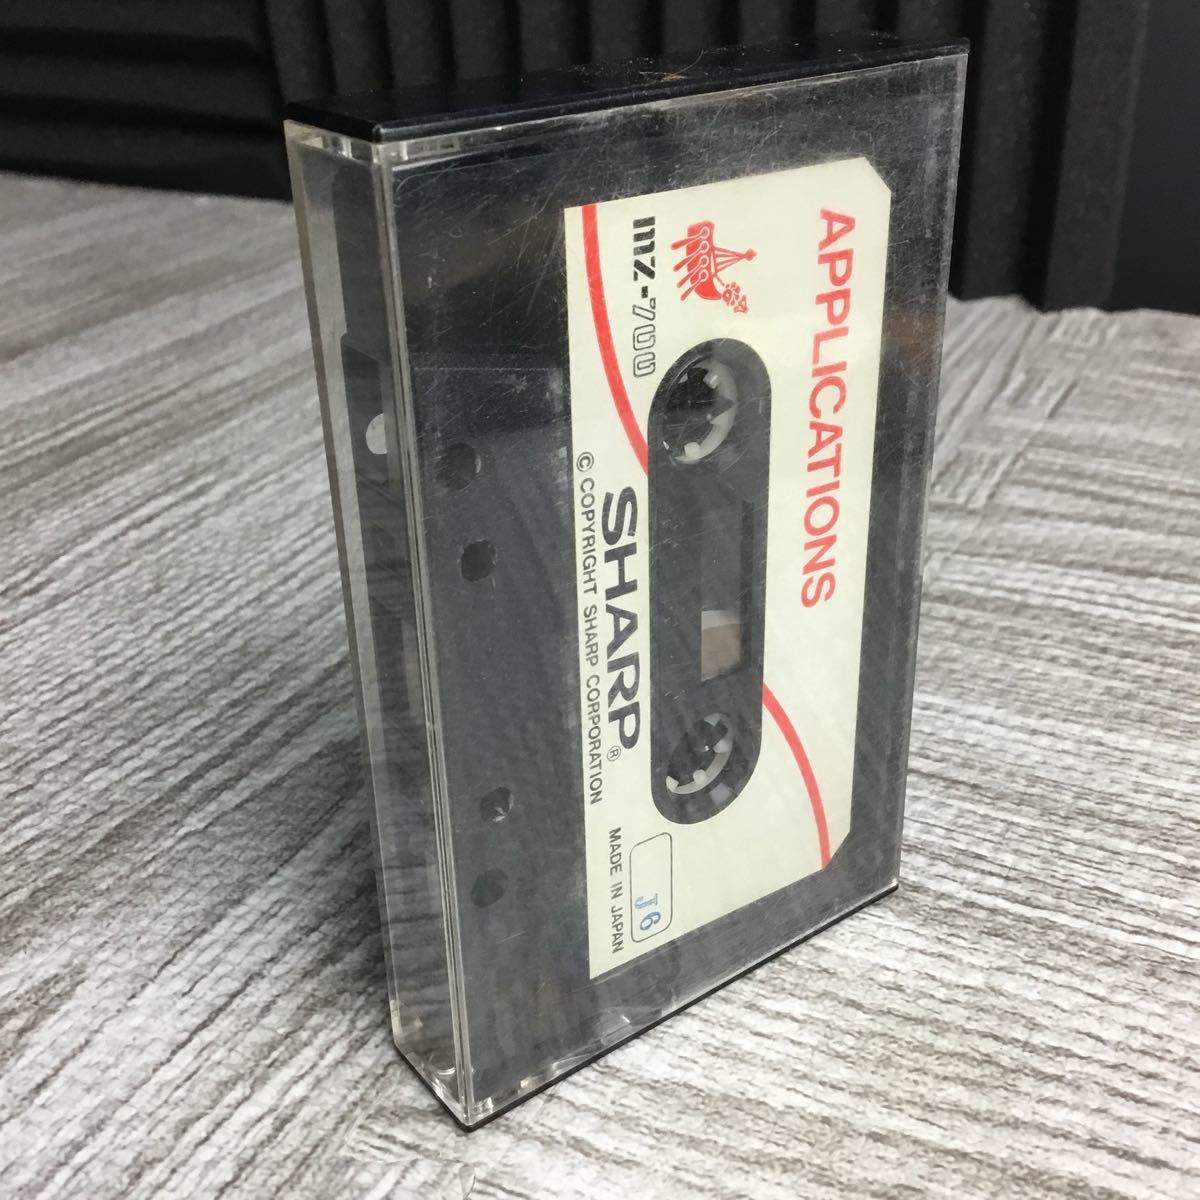  cassette tape SHARP MZ-700 APPLCATIONS HU-BASIC